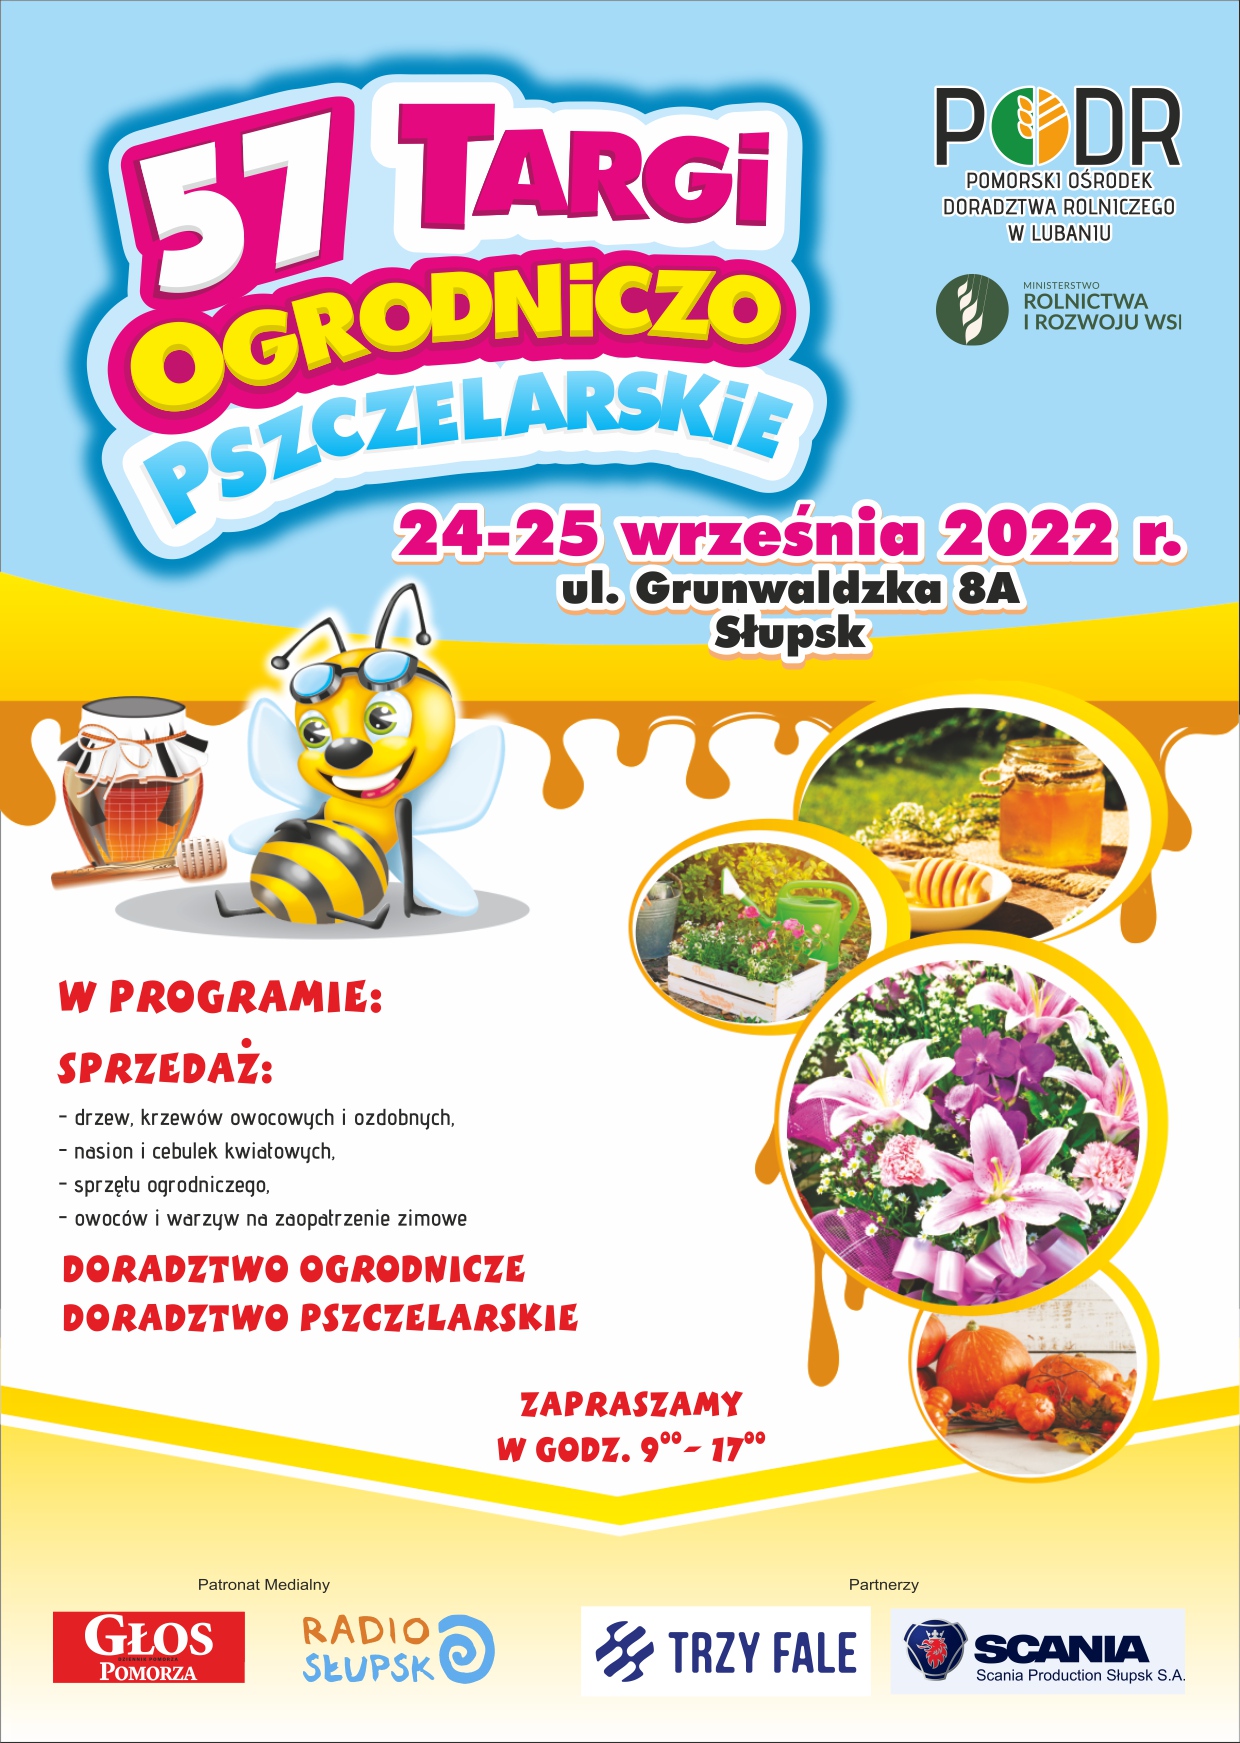 57 Targi Ogrodniczo-Pszczelarskie “Jesień 2022” - plakat